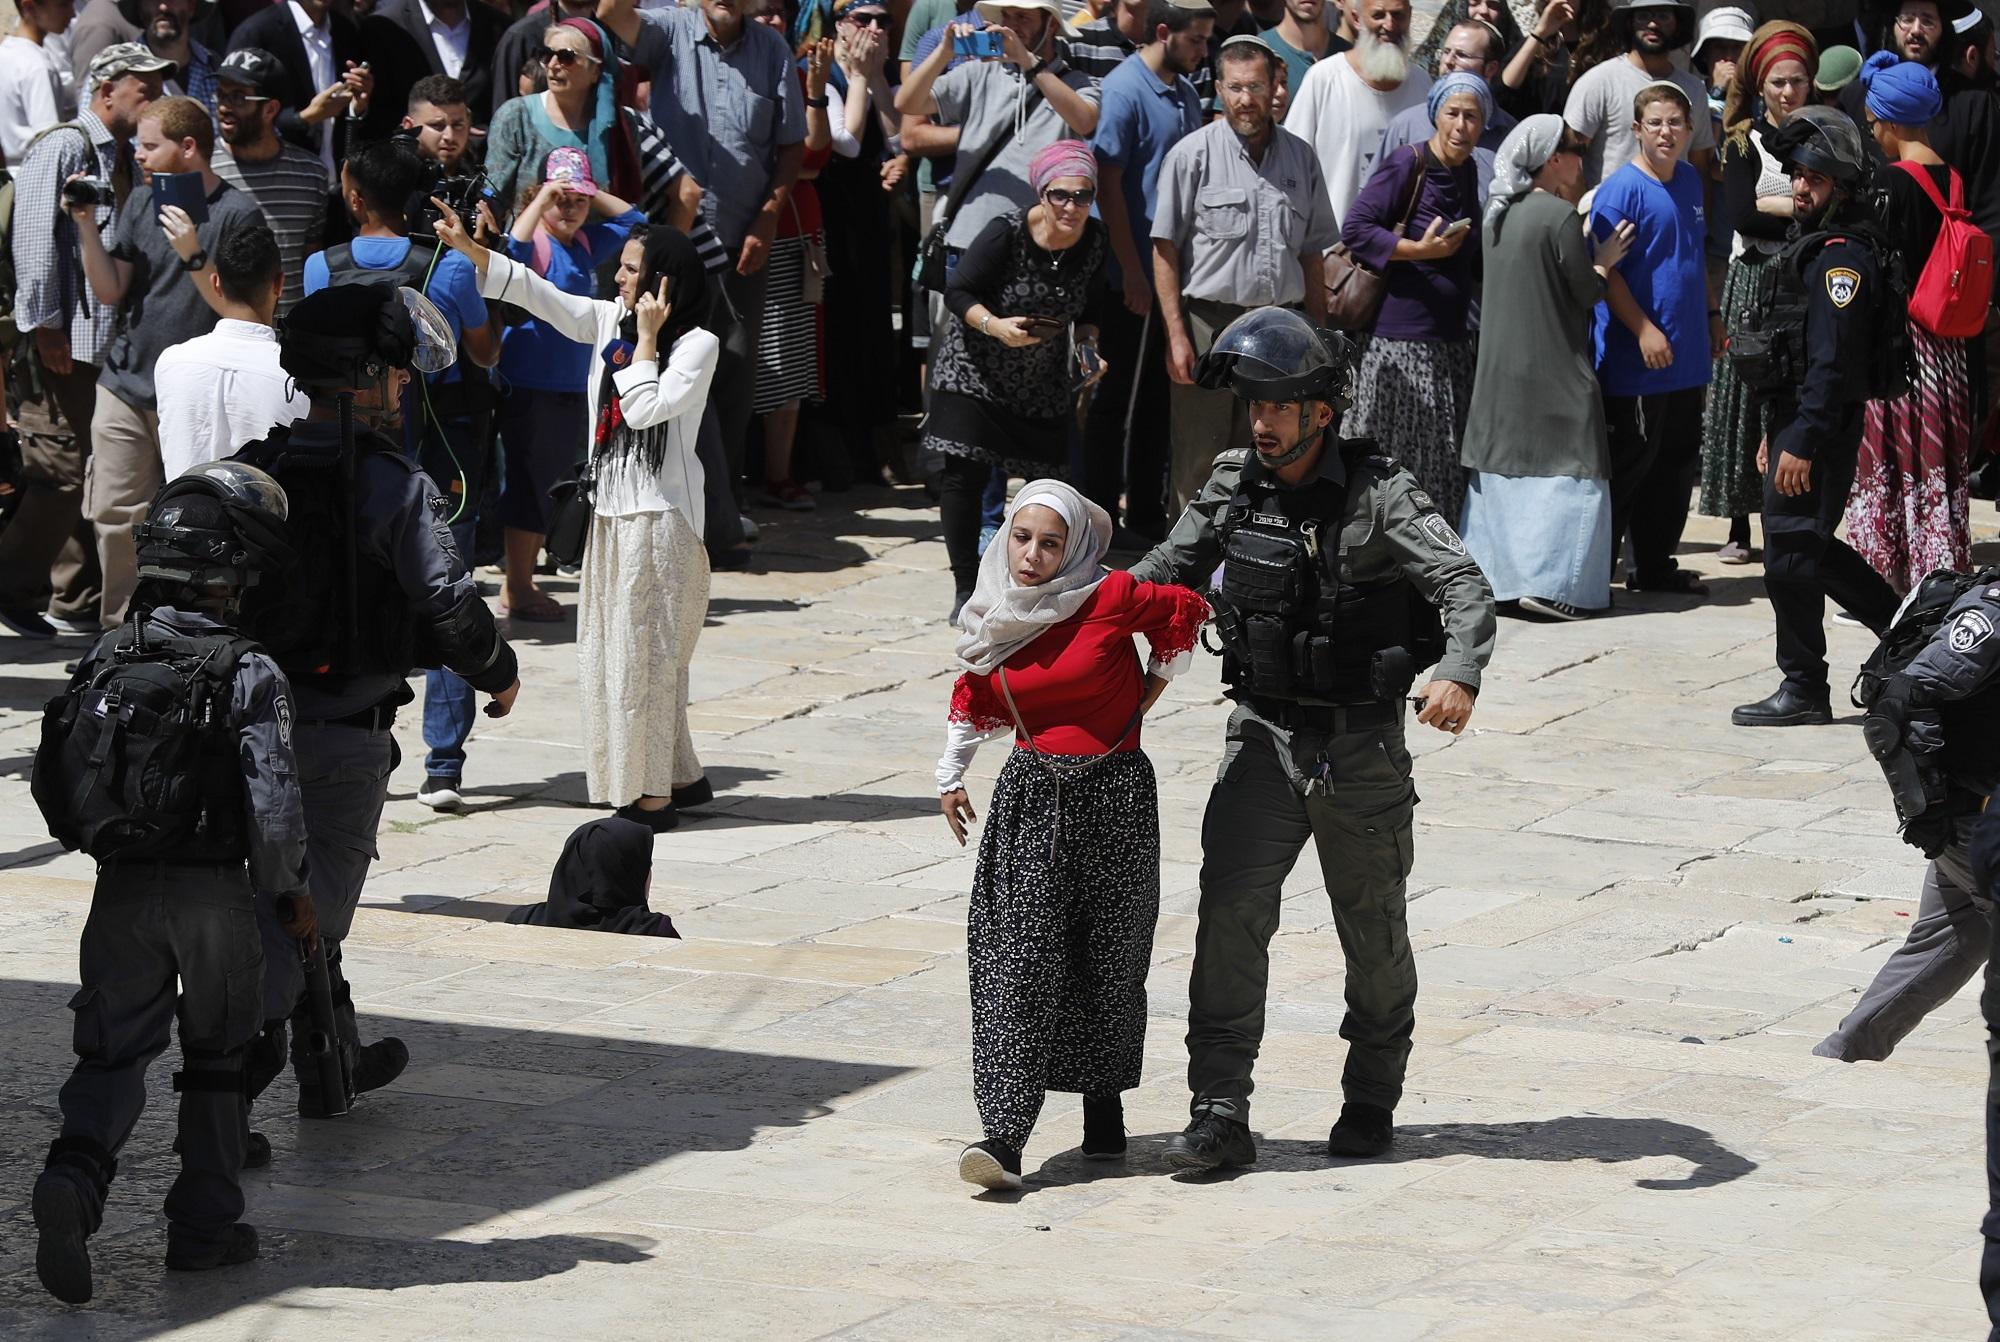 أحد عناصر قوات الاحتلال الإسرائيلي يعتقل فتاة فلسطينية بينما يقف خلفهما مستوطنون، خلال اقتحامات واسعة لباحات المسجد الأقصى، واعتداءات ضد المصلين، 11/08/2019. (أحمد غربلي/أ ف ب).